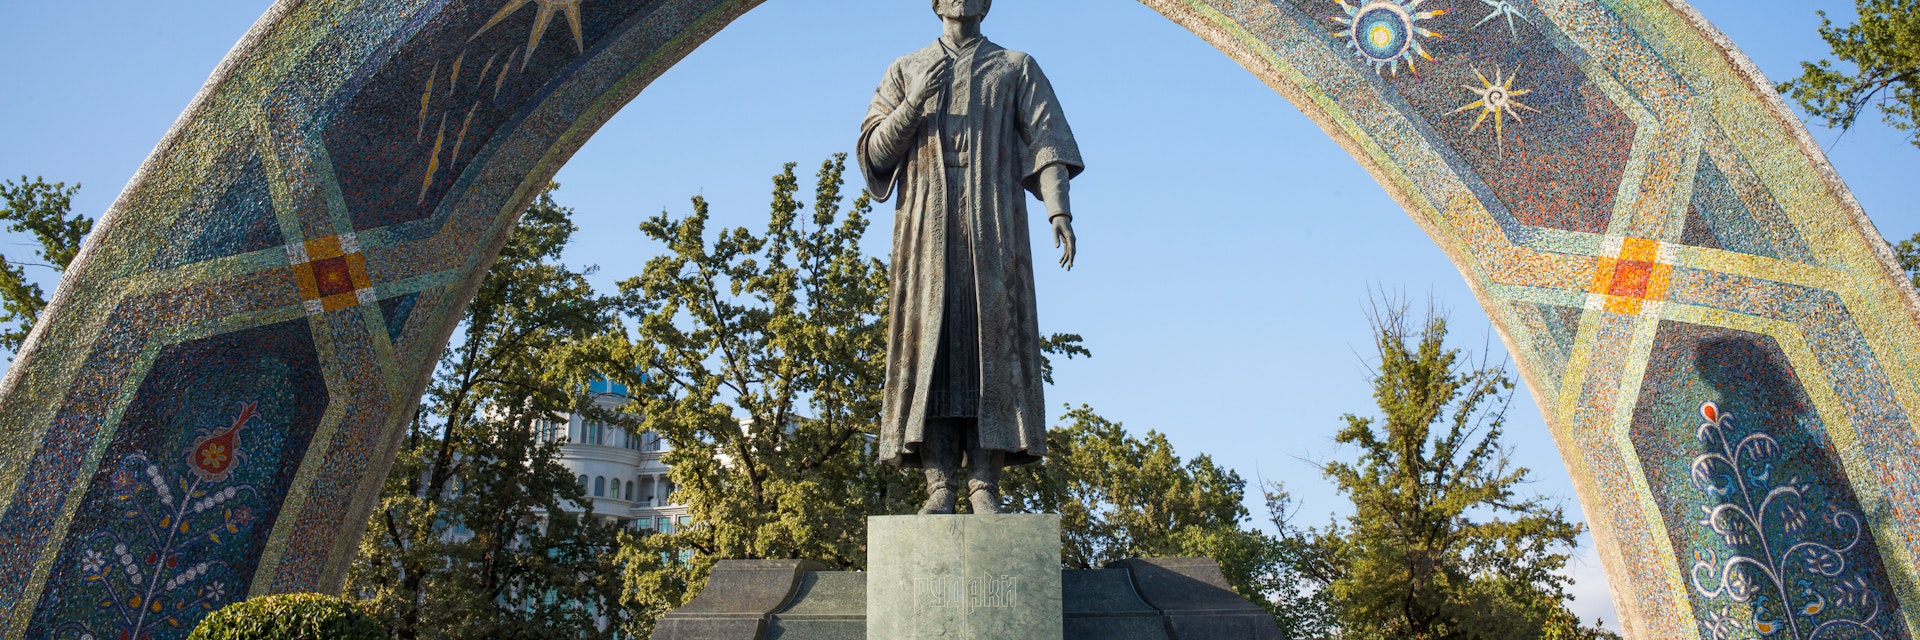 Statue of the famous Persian poet Rudaki in Rudaki Park.